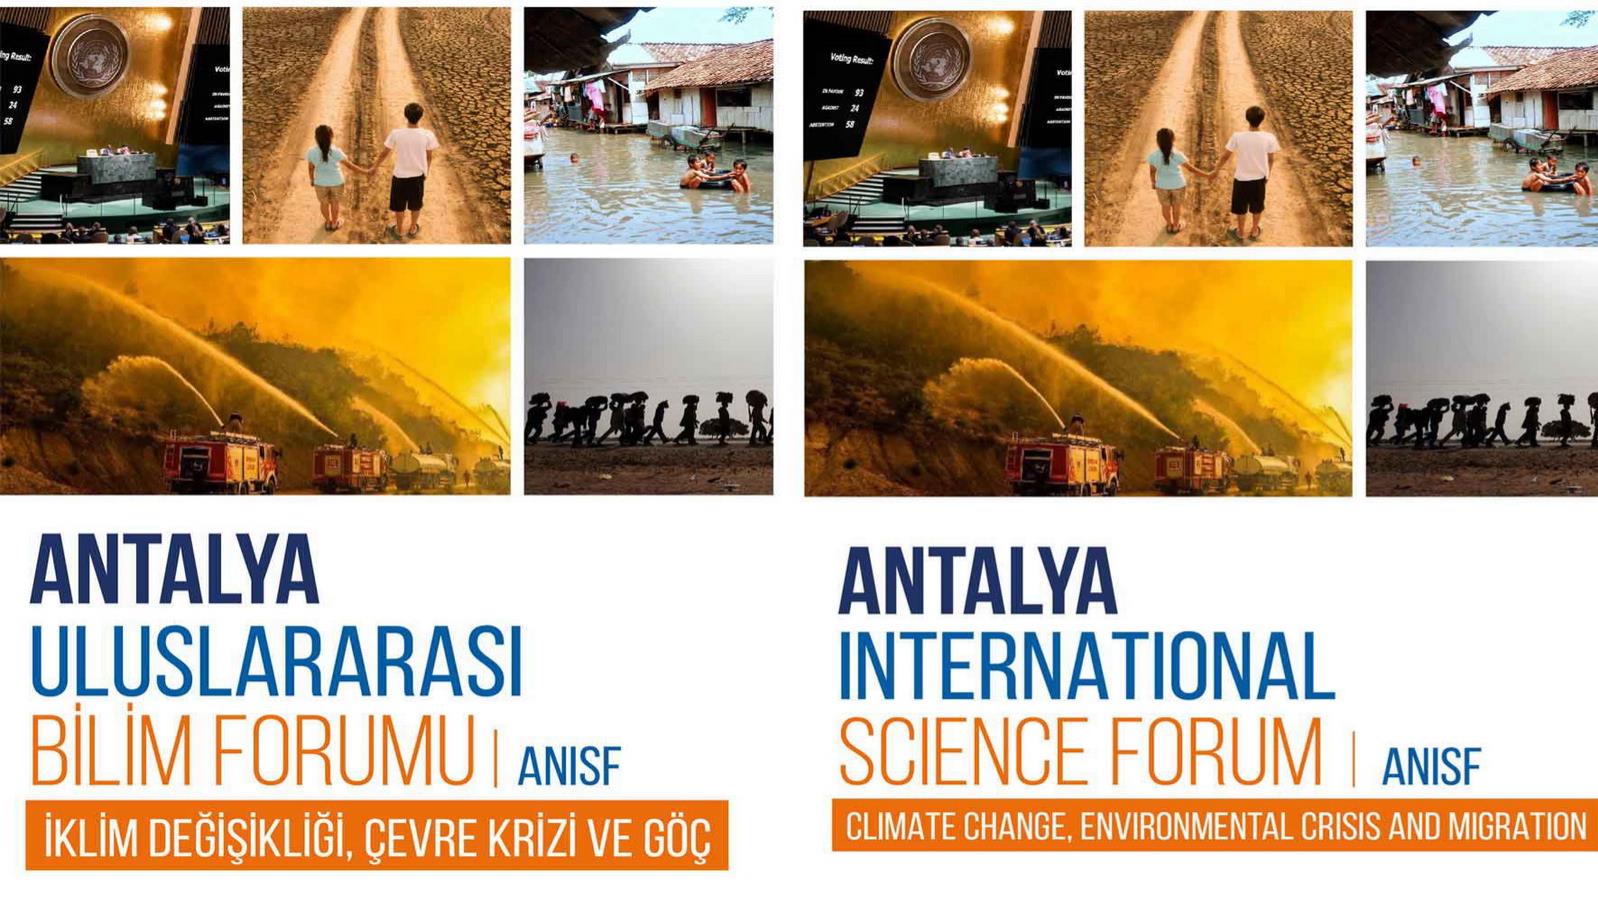 ASPAG "İklim Değişikliği, Çevre Krizi ve Göç" konulu Antalya Uluslararası Bilim Forumu